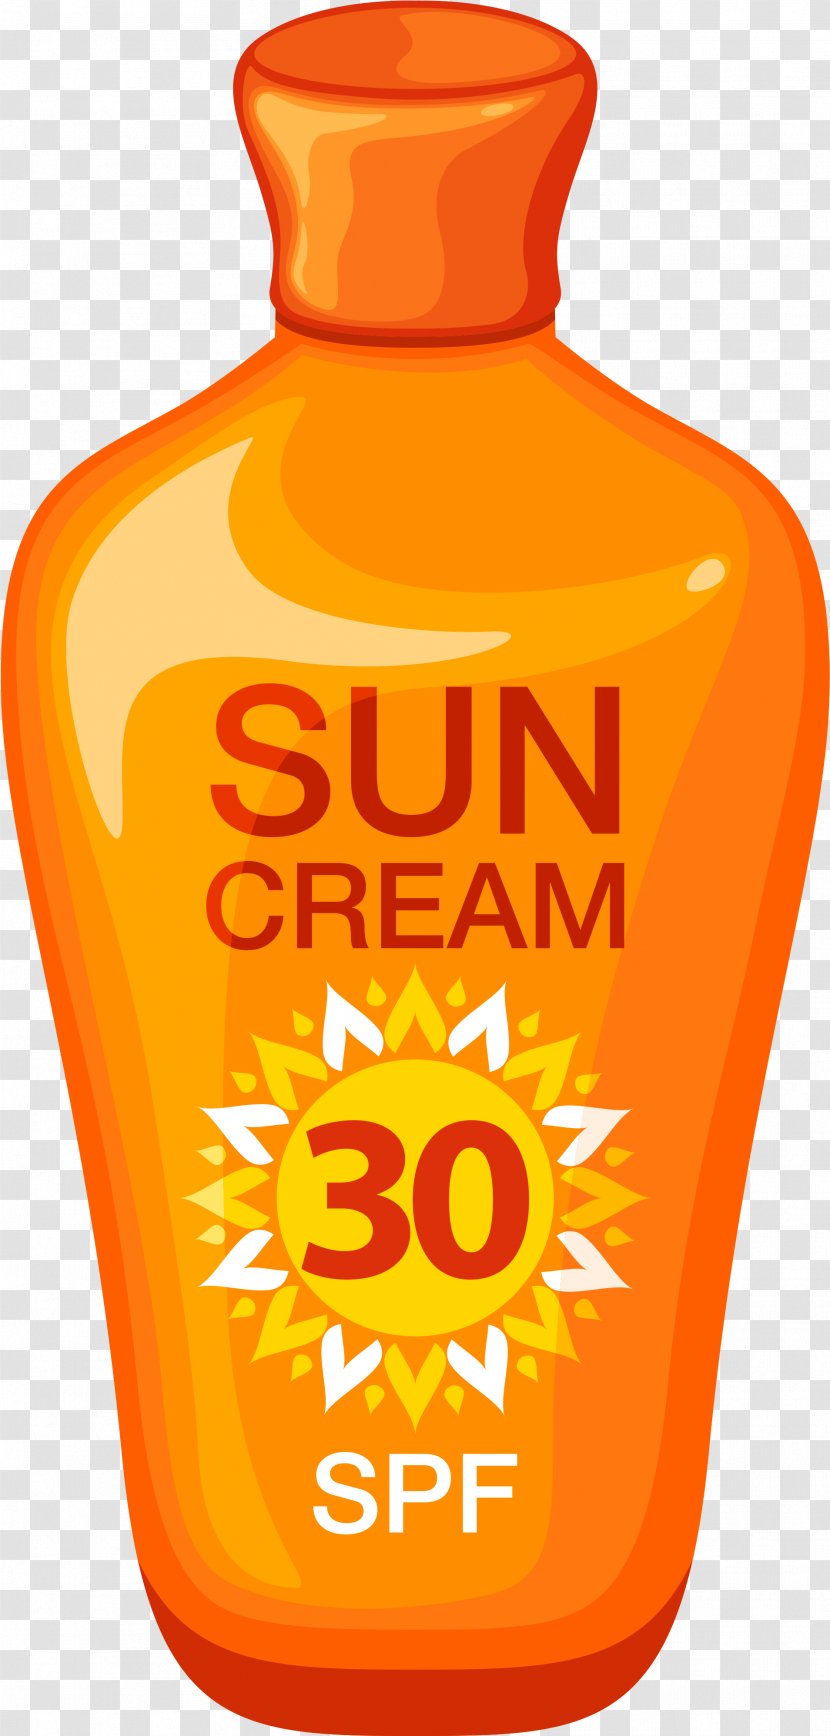 Product Font Mobile Phones - Orange Soft Drink - Summer Sun Cream Adobe Illustrator Transparent PNG